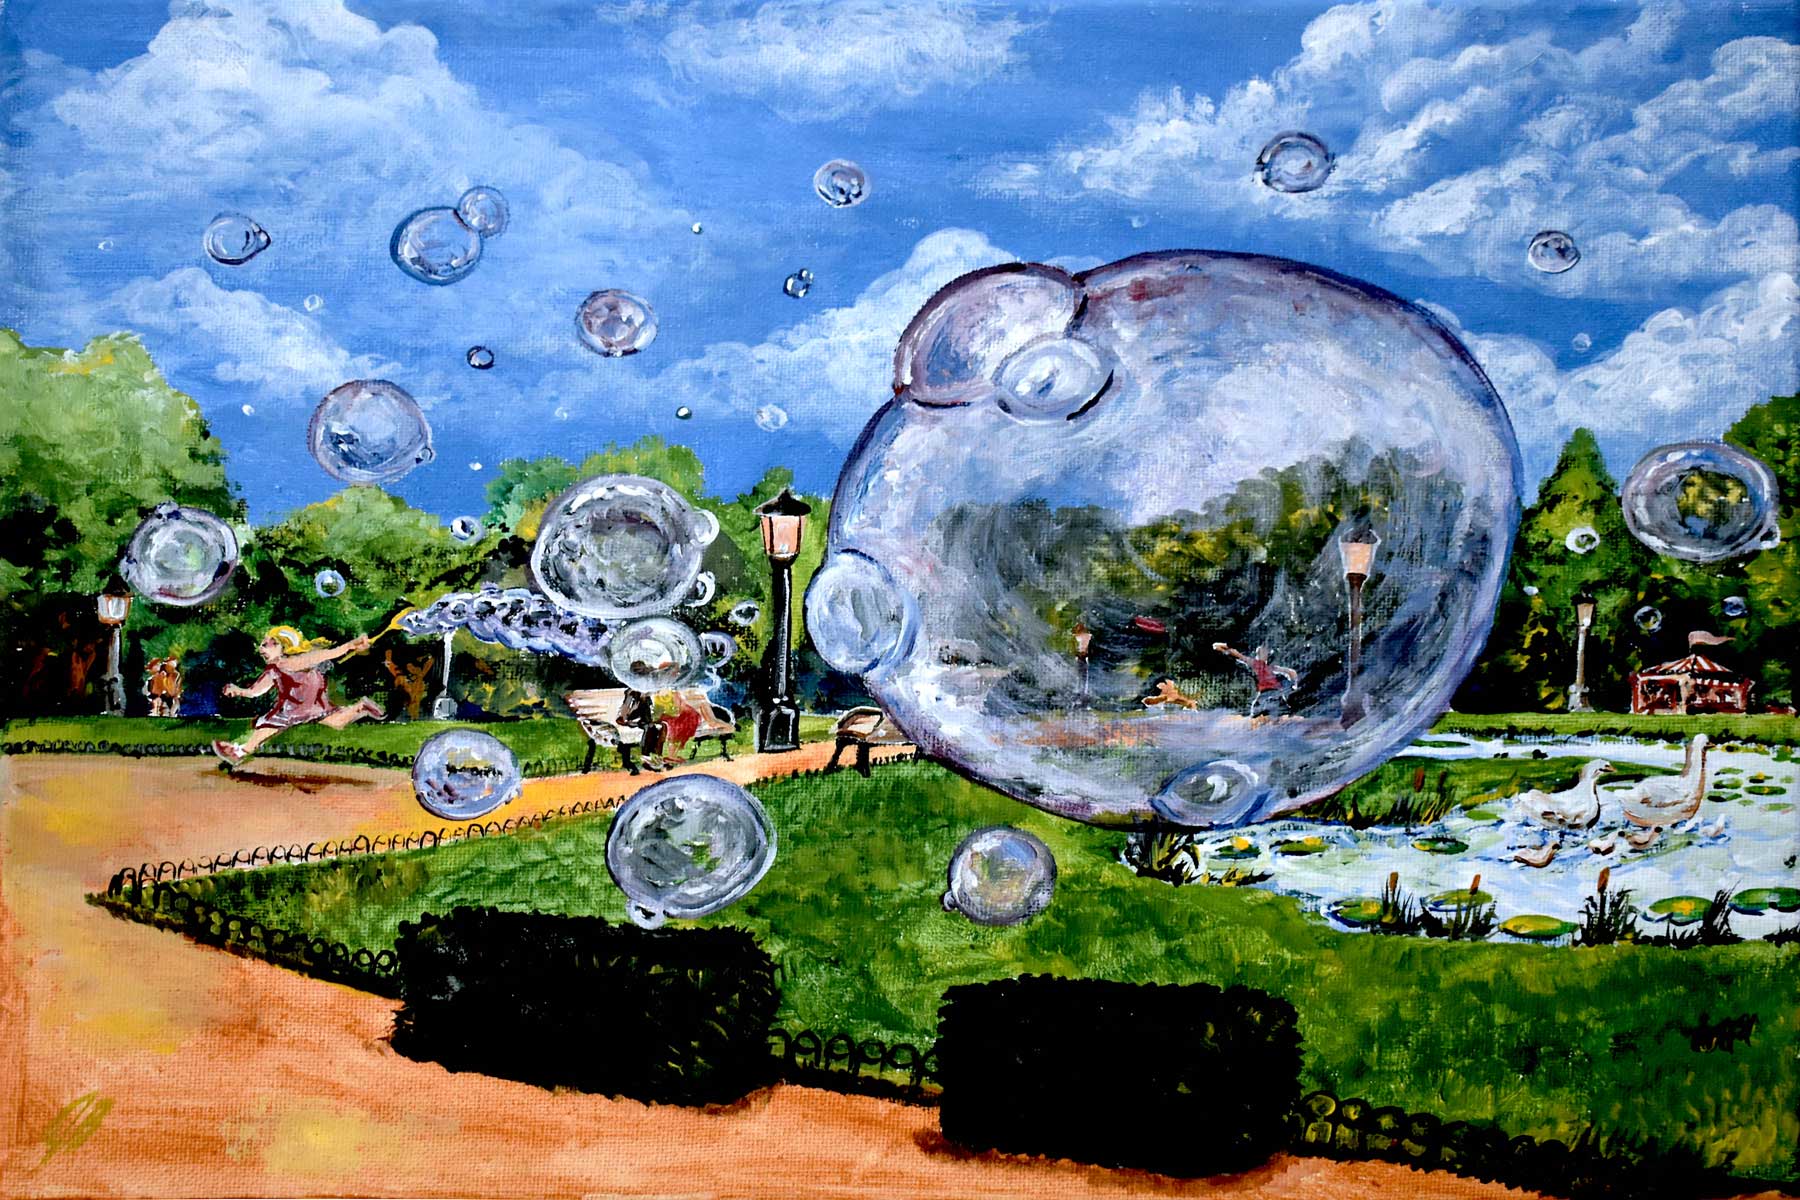 Bubble Park